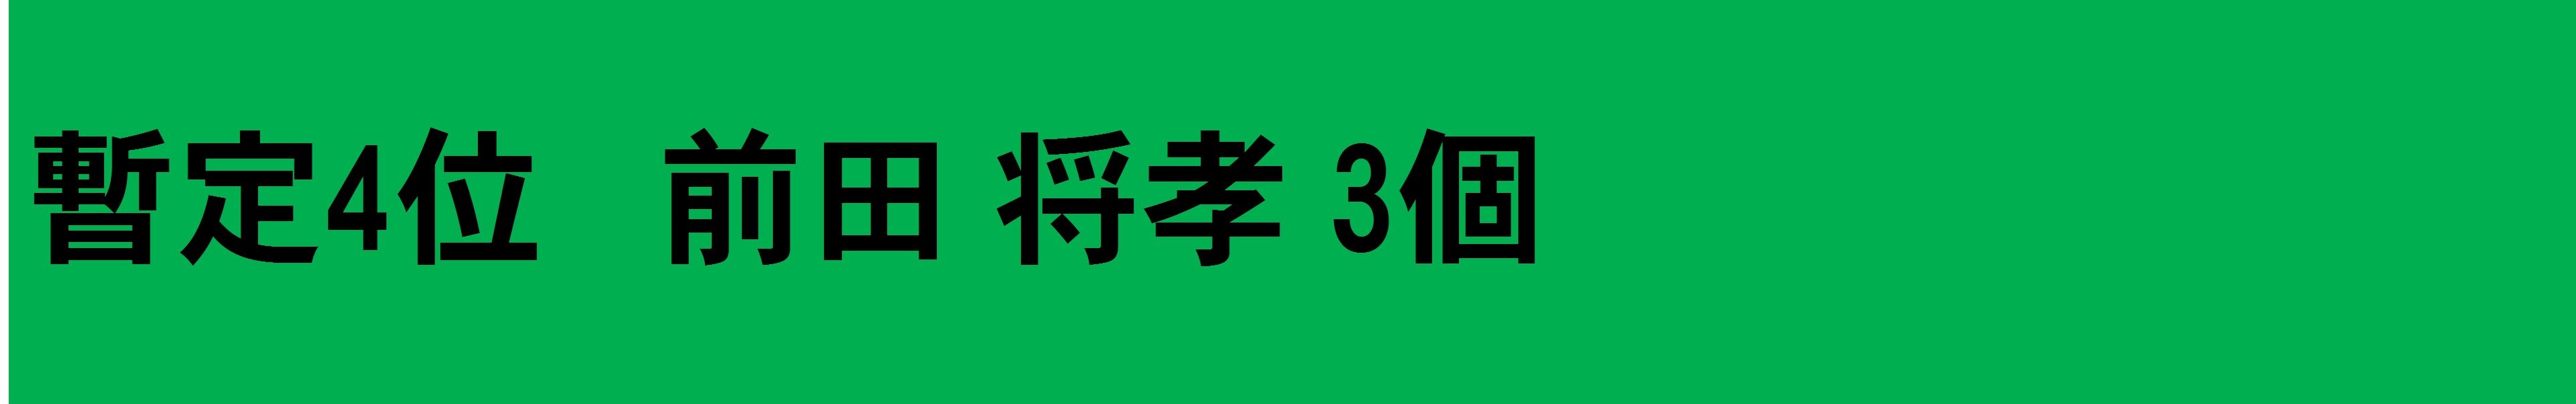 選手紹介ラベル-124 - コピー (3)